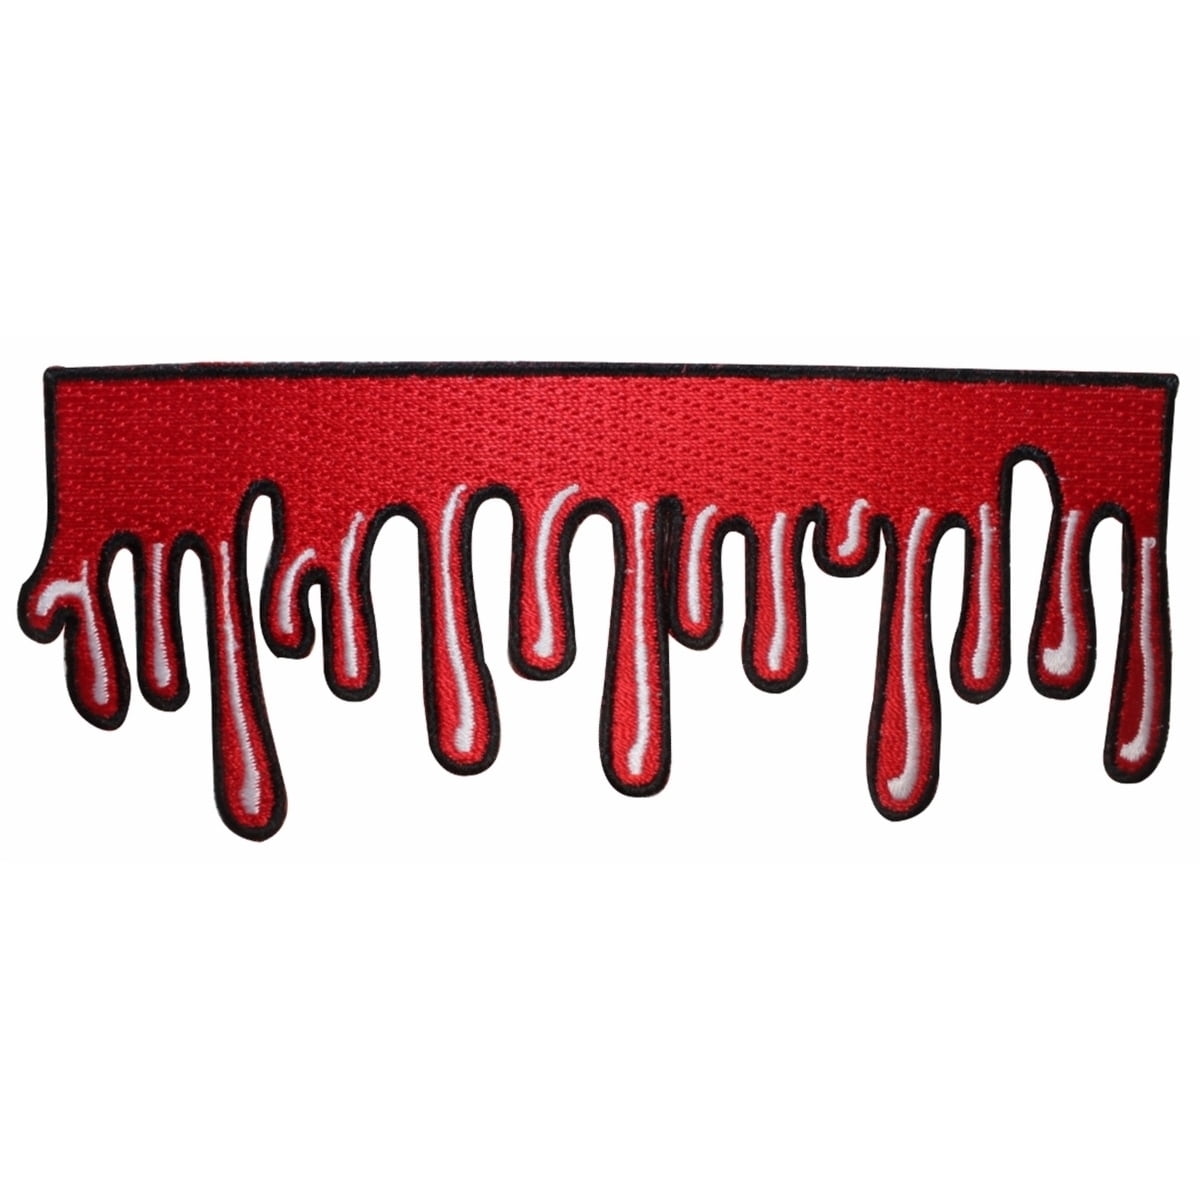 Dripping Blood Ooze Horror Dead Kreepsville Embroidered Iron On ...